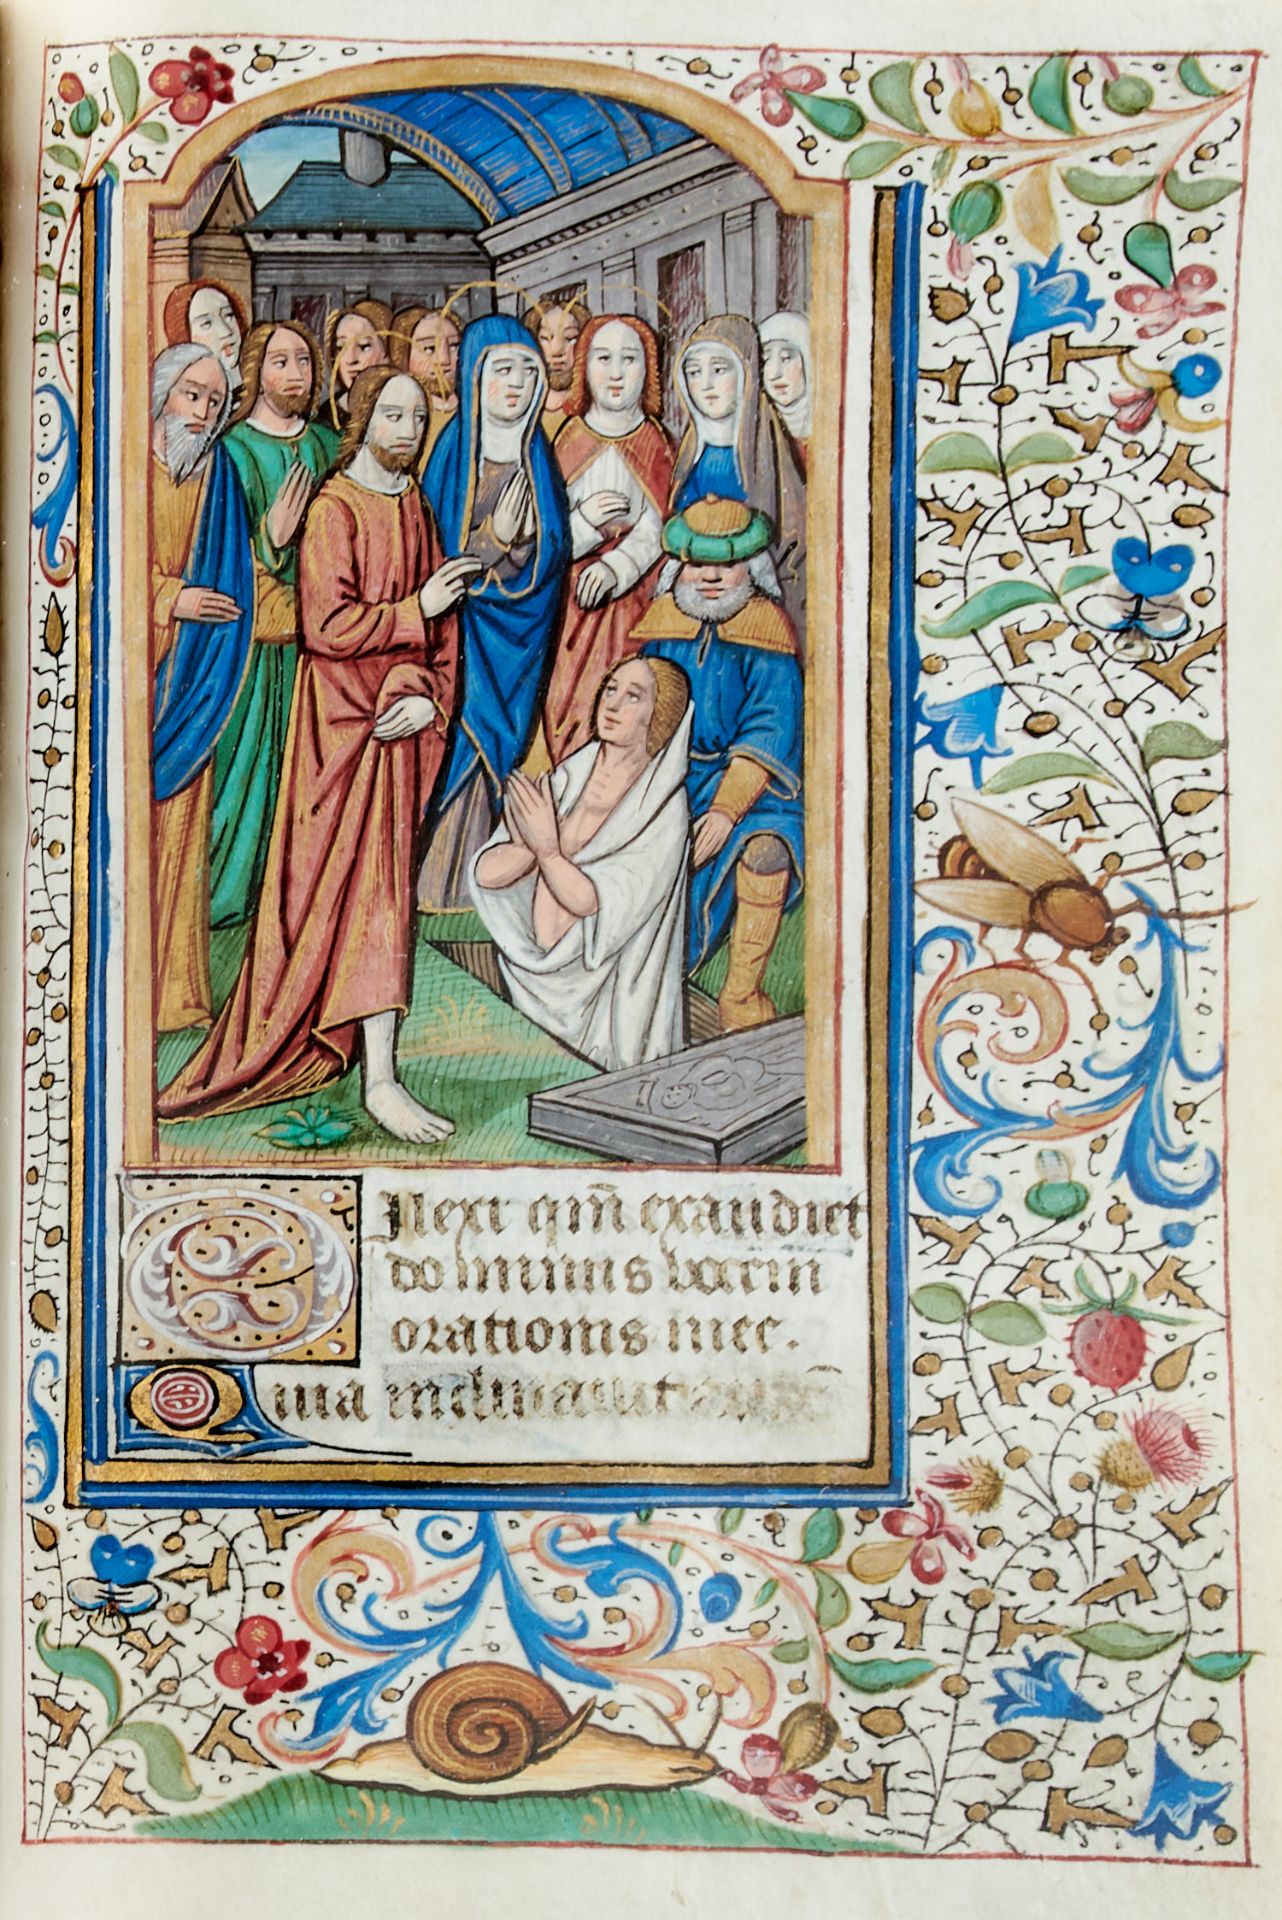 Pariser Stundenbuch. Lateinische Handschrift auf Pergament. Paris, um 1500. Ca. 14 x 10 cm. - Image 23 of 26